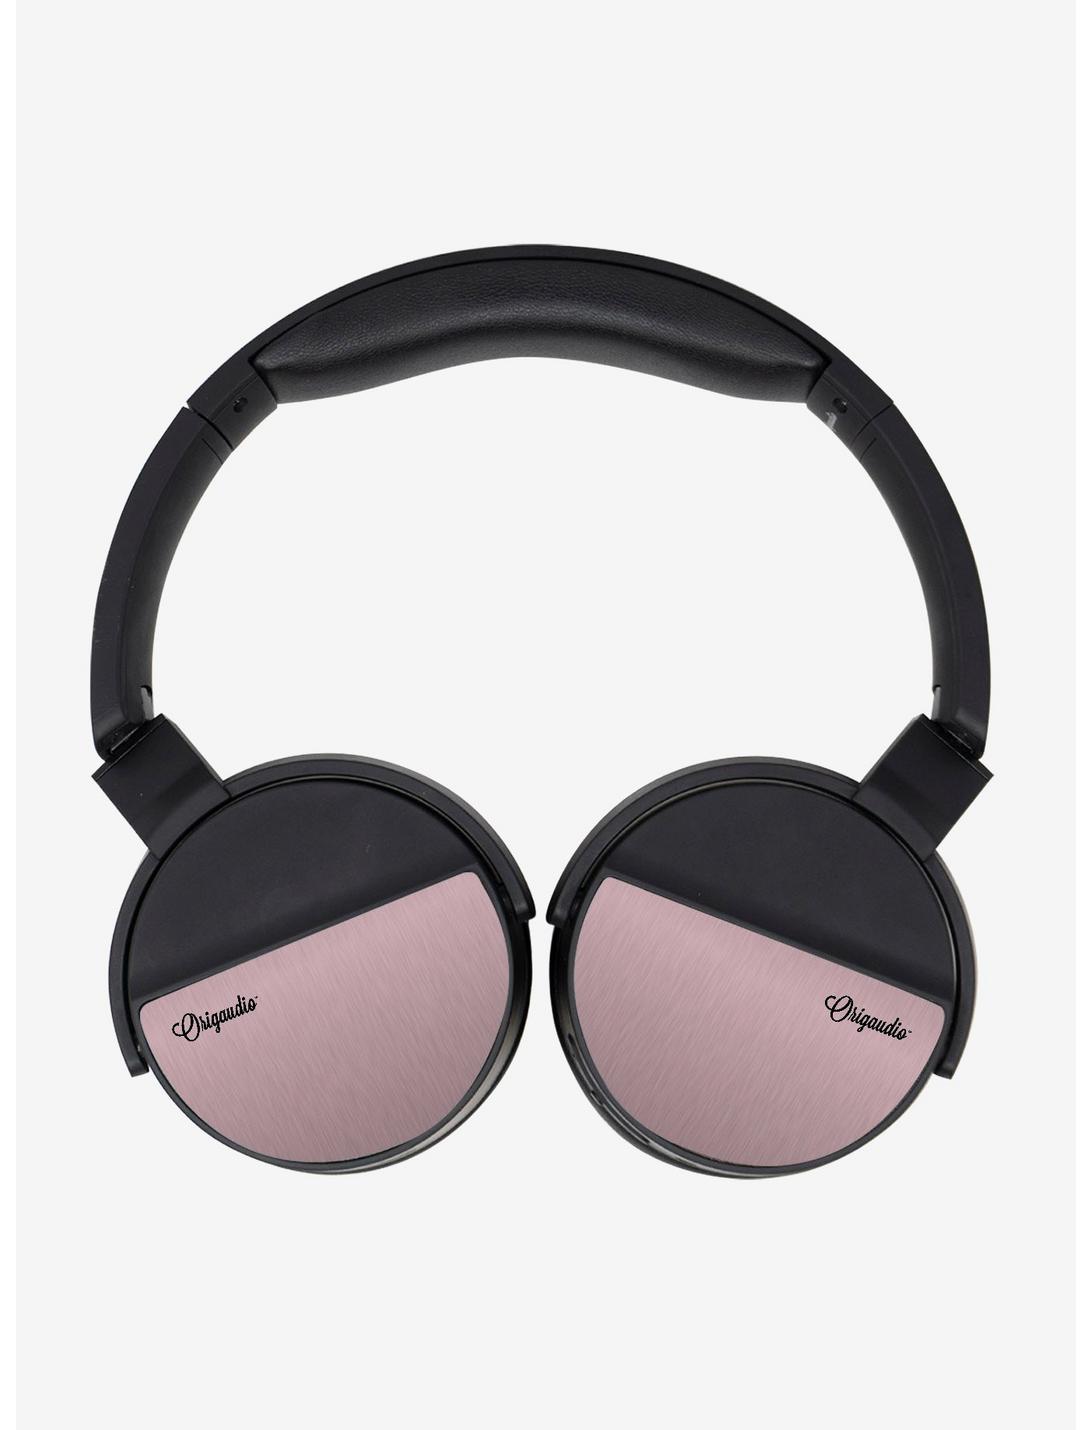 LunaTunes Light Pink Wireless Headphones, , hi-res